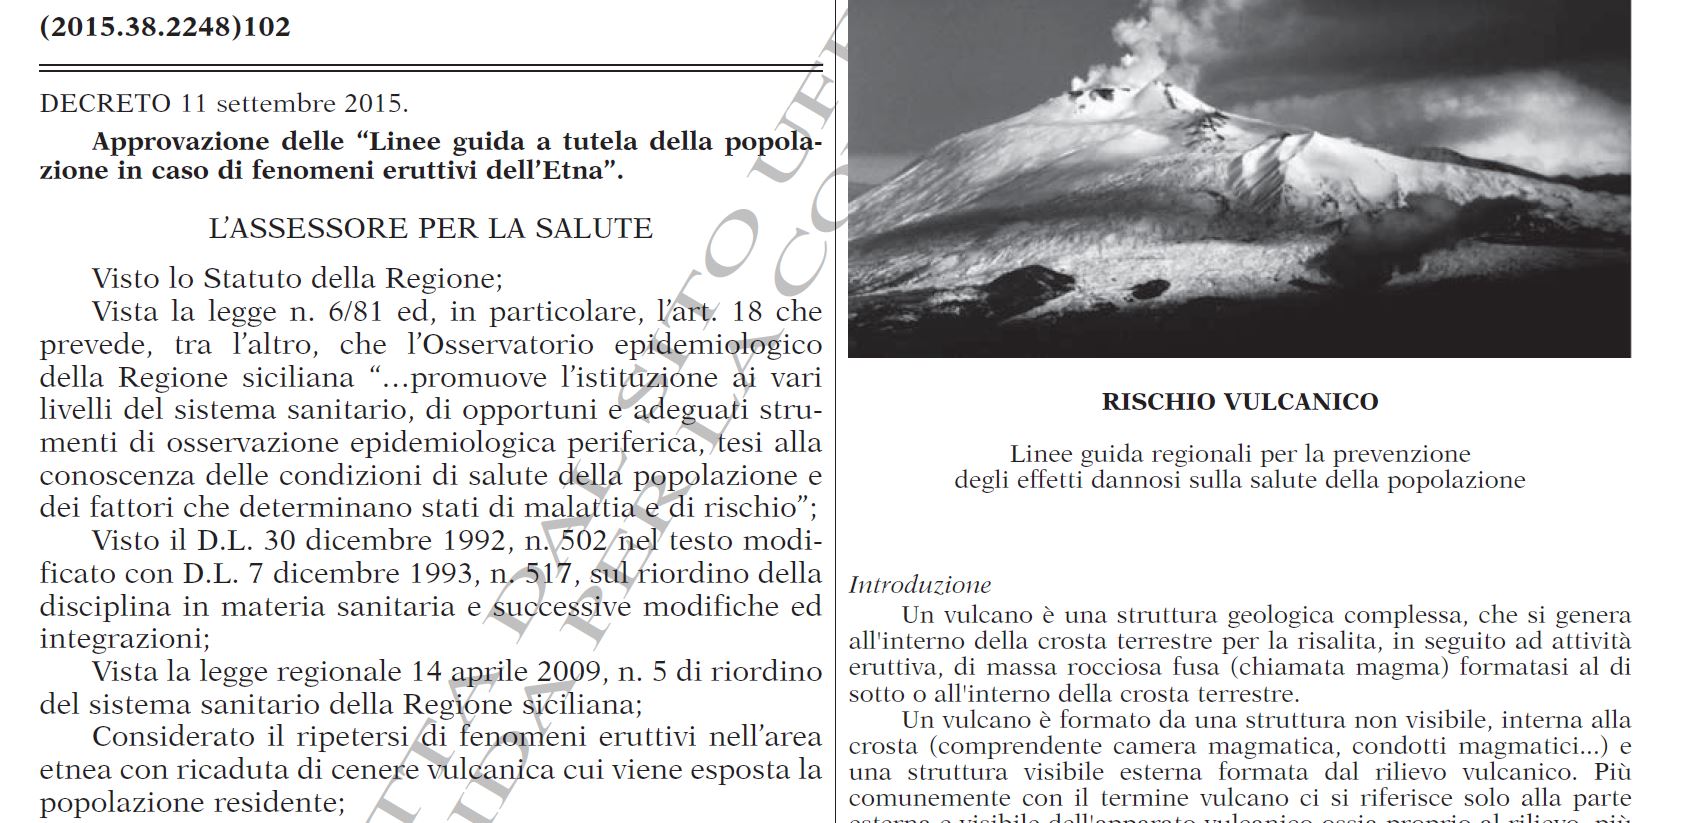 Approvazione delle “Linee guida a tutela della popolazione in caso di fenomeni eruttivi dell’Etna”.